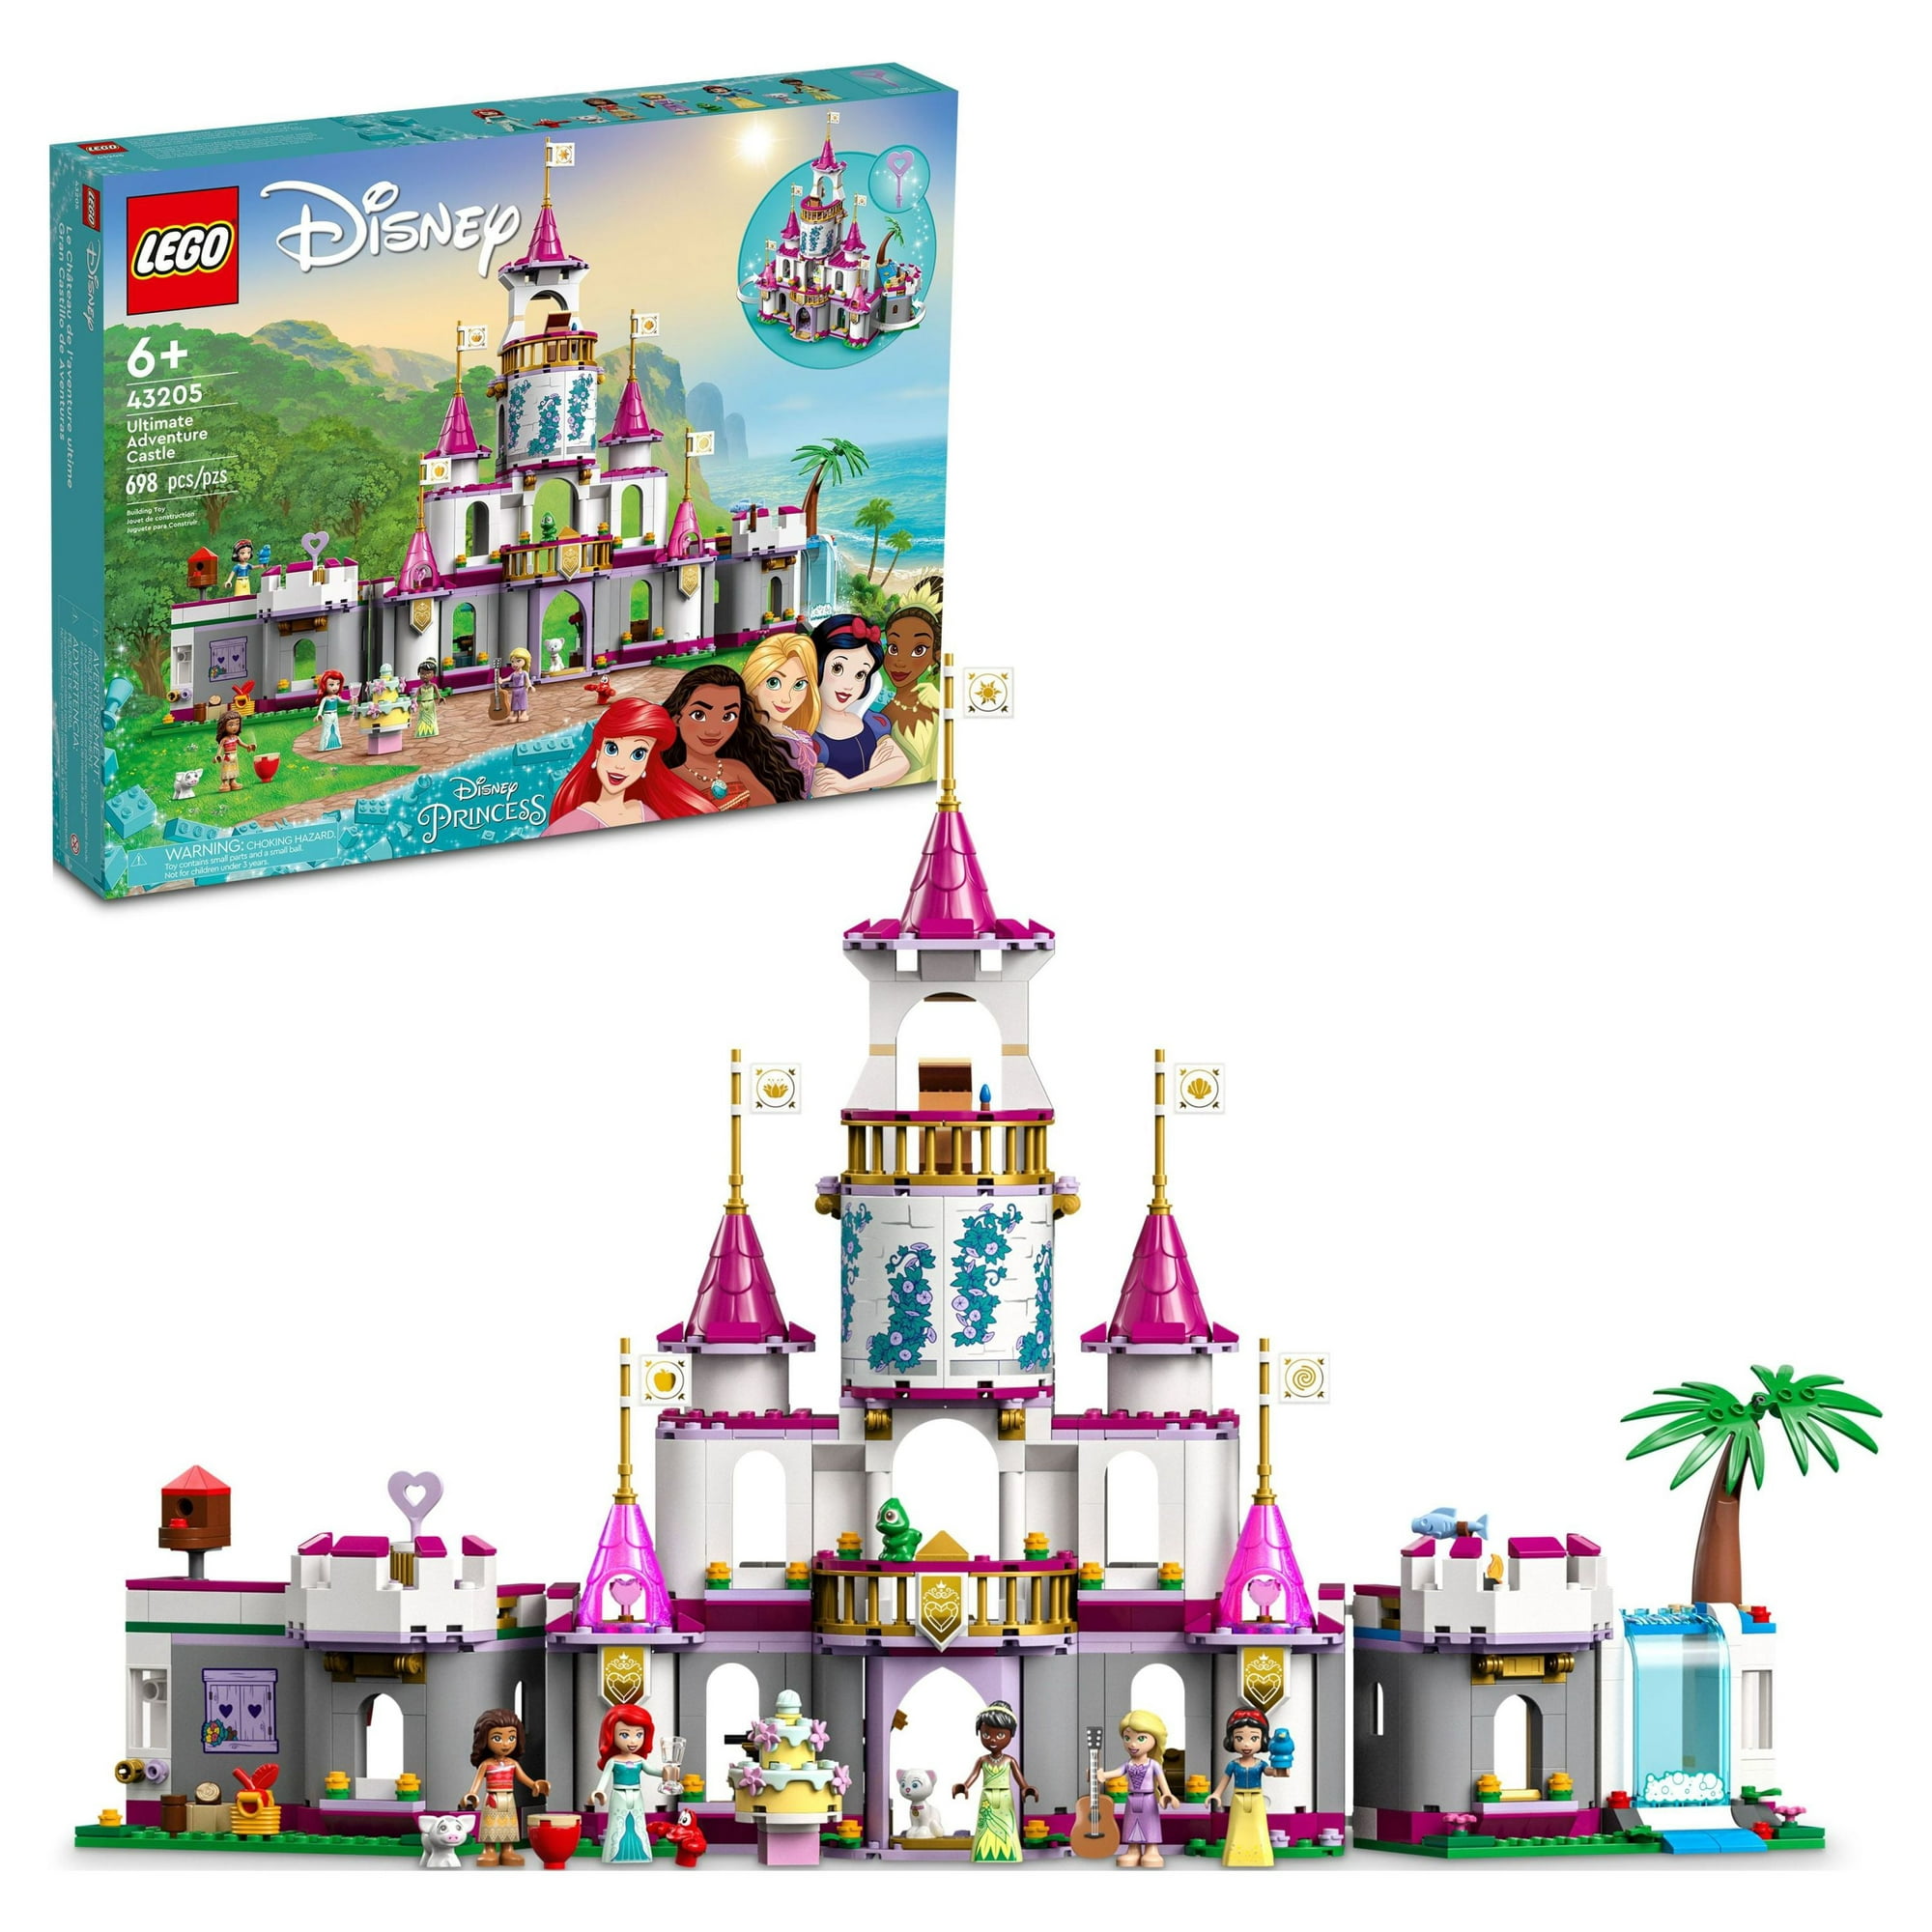 LEGO Disney Princess Ultimate Adventure Castle Building Toy Construir Toy Castle Inclui 5 mini bonecas Ariel Rapunzel Branca de Neve Presente Meninos Meninas 43205 7a3d5d54 27ba 4e40 a0fe 188f07a242ee.9deba366031bad13e677c15e1db9bc0b